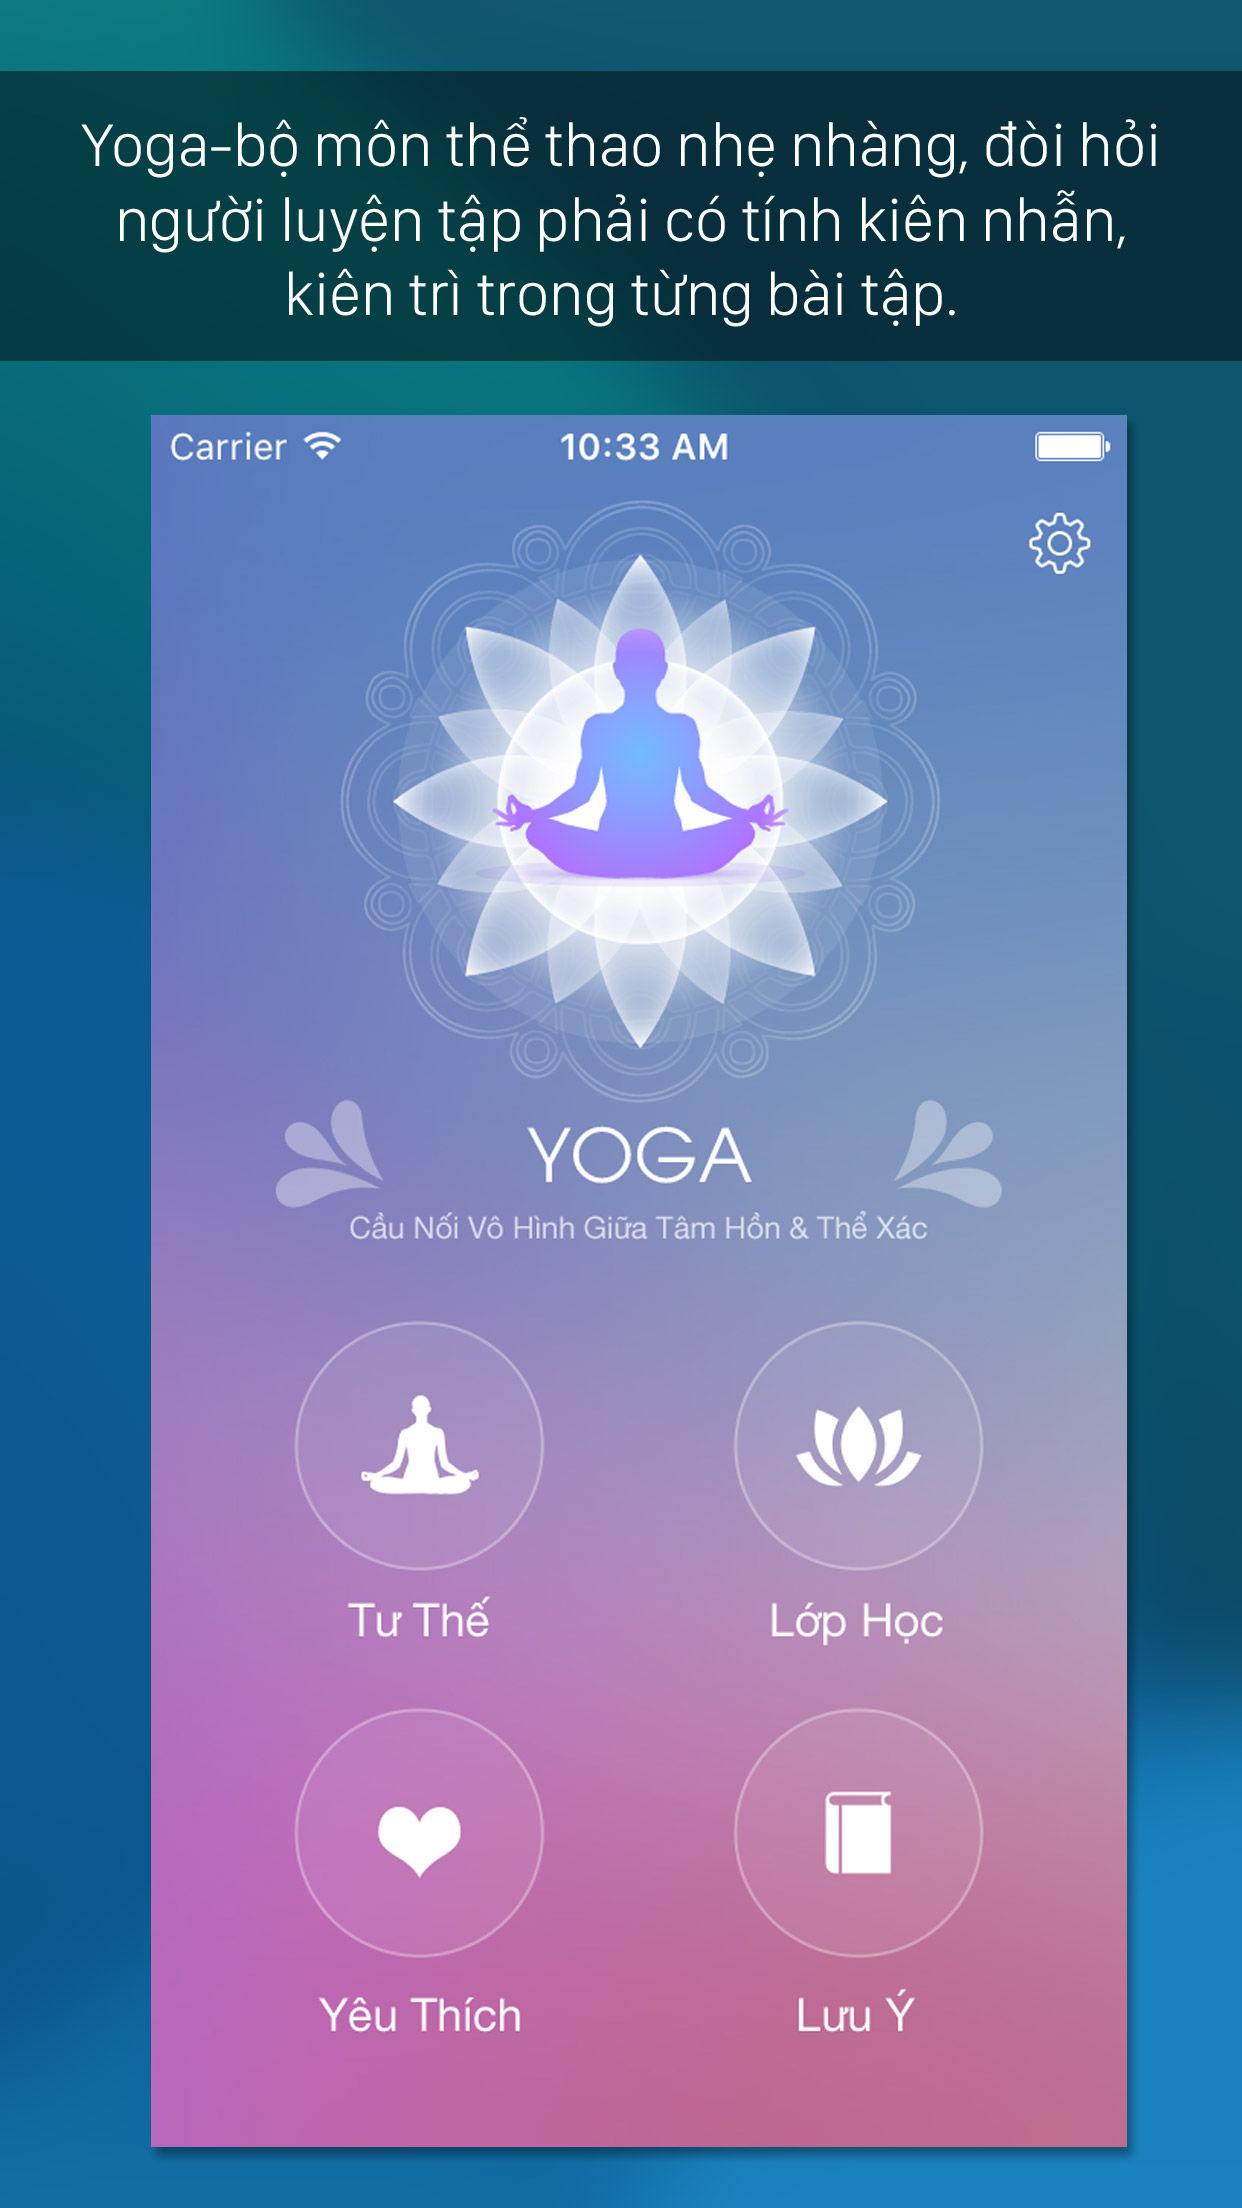 Android application Yoga - Tong hop cac tu the screenshort